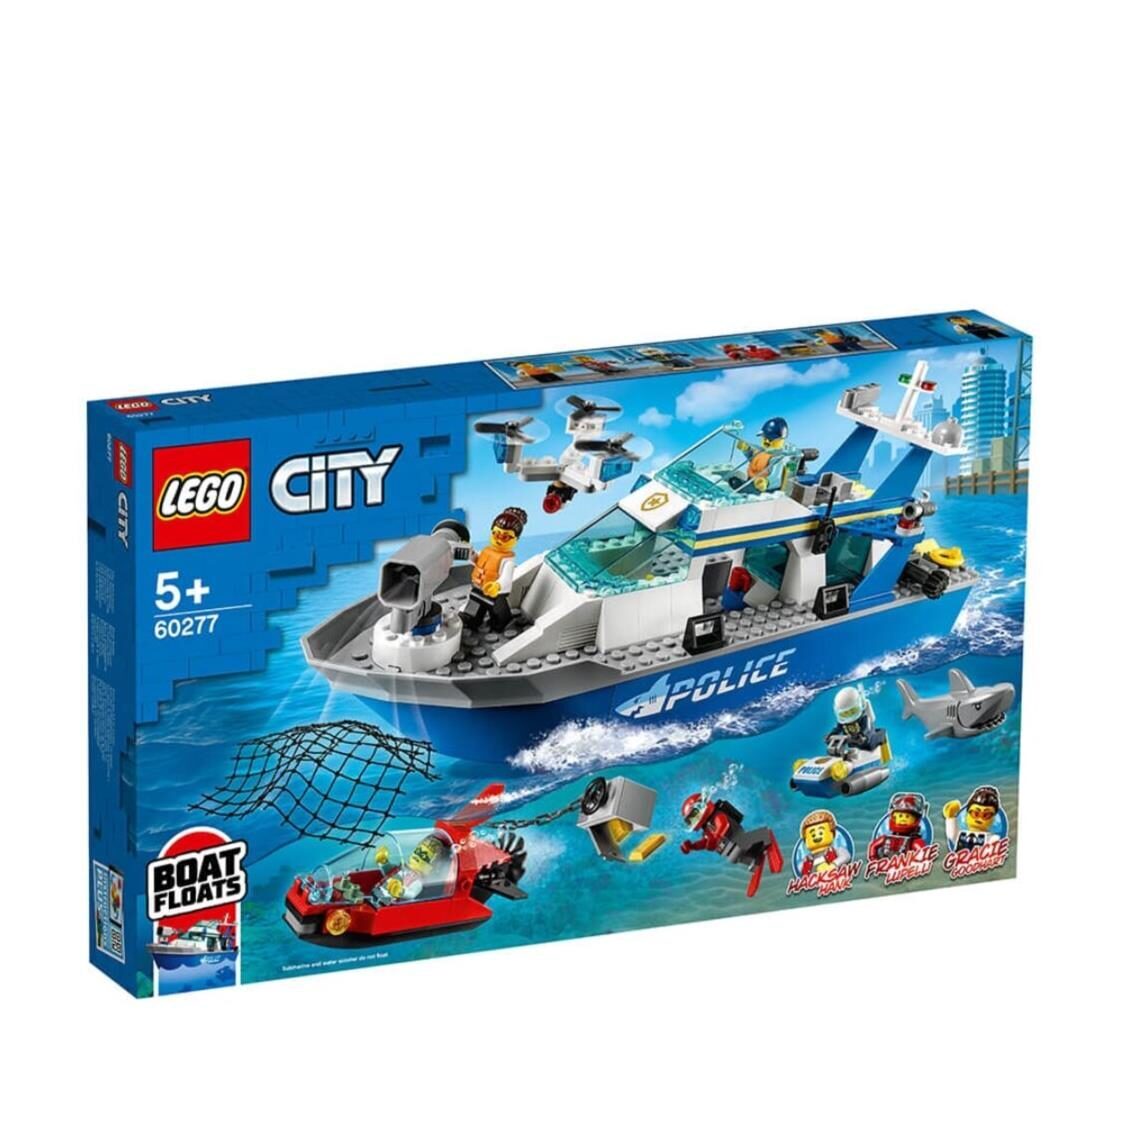 LEGO City Police - Police Patrol Boat 60277